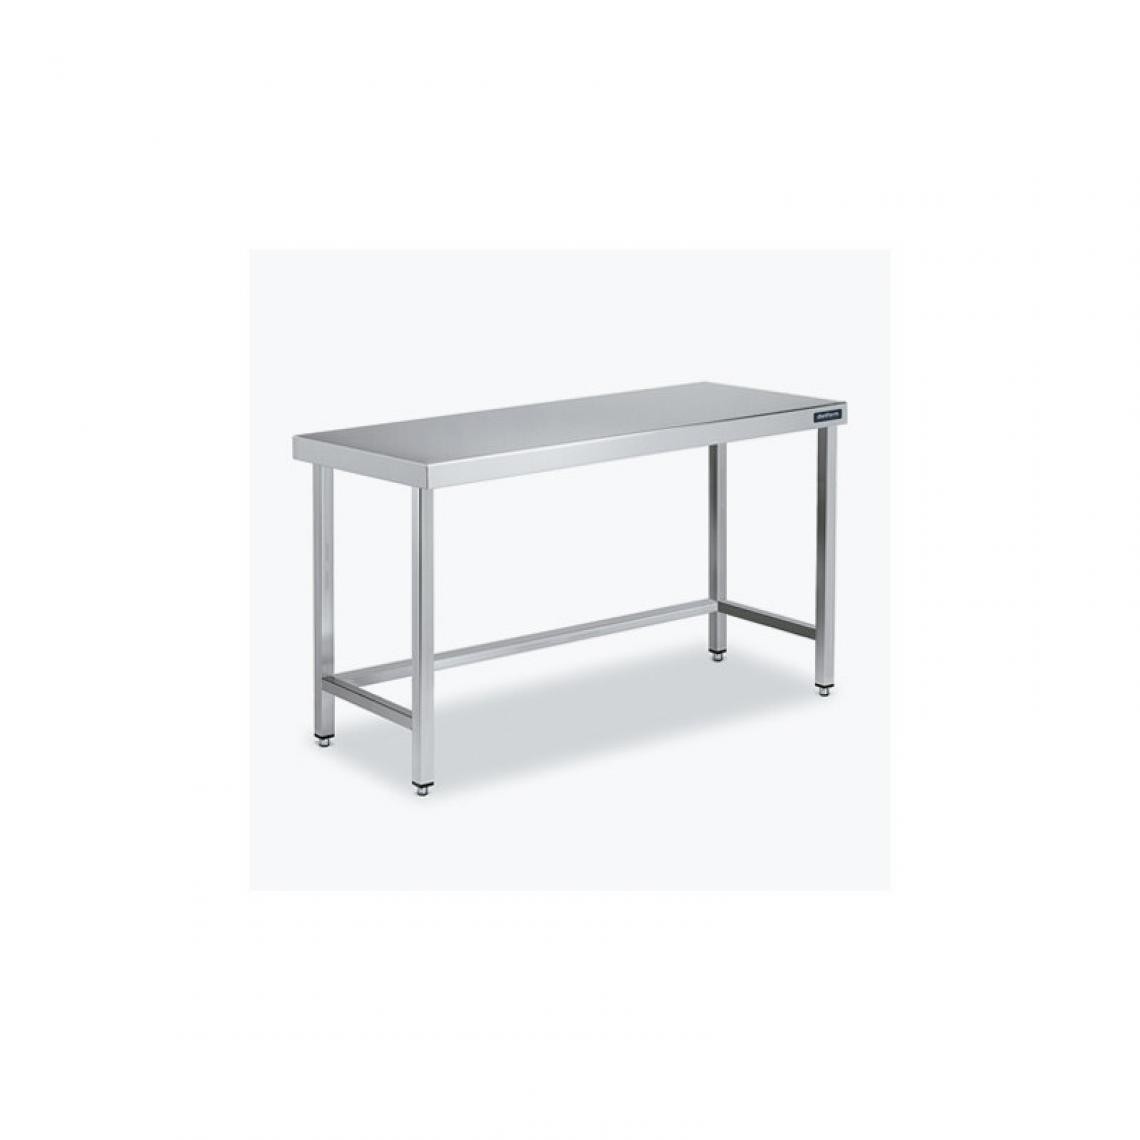 DISTFORM - Table Centrale 600x500 avec Renforts - Distform - Inox 18/102200x500x850mm - Tables à manger